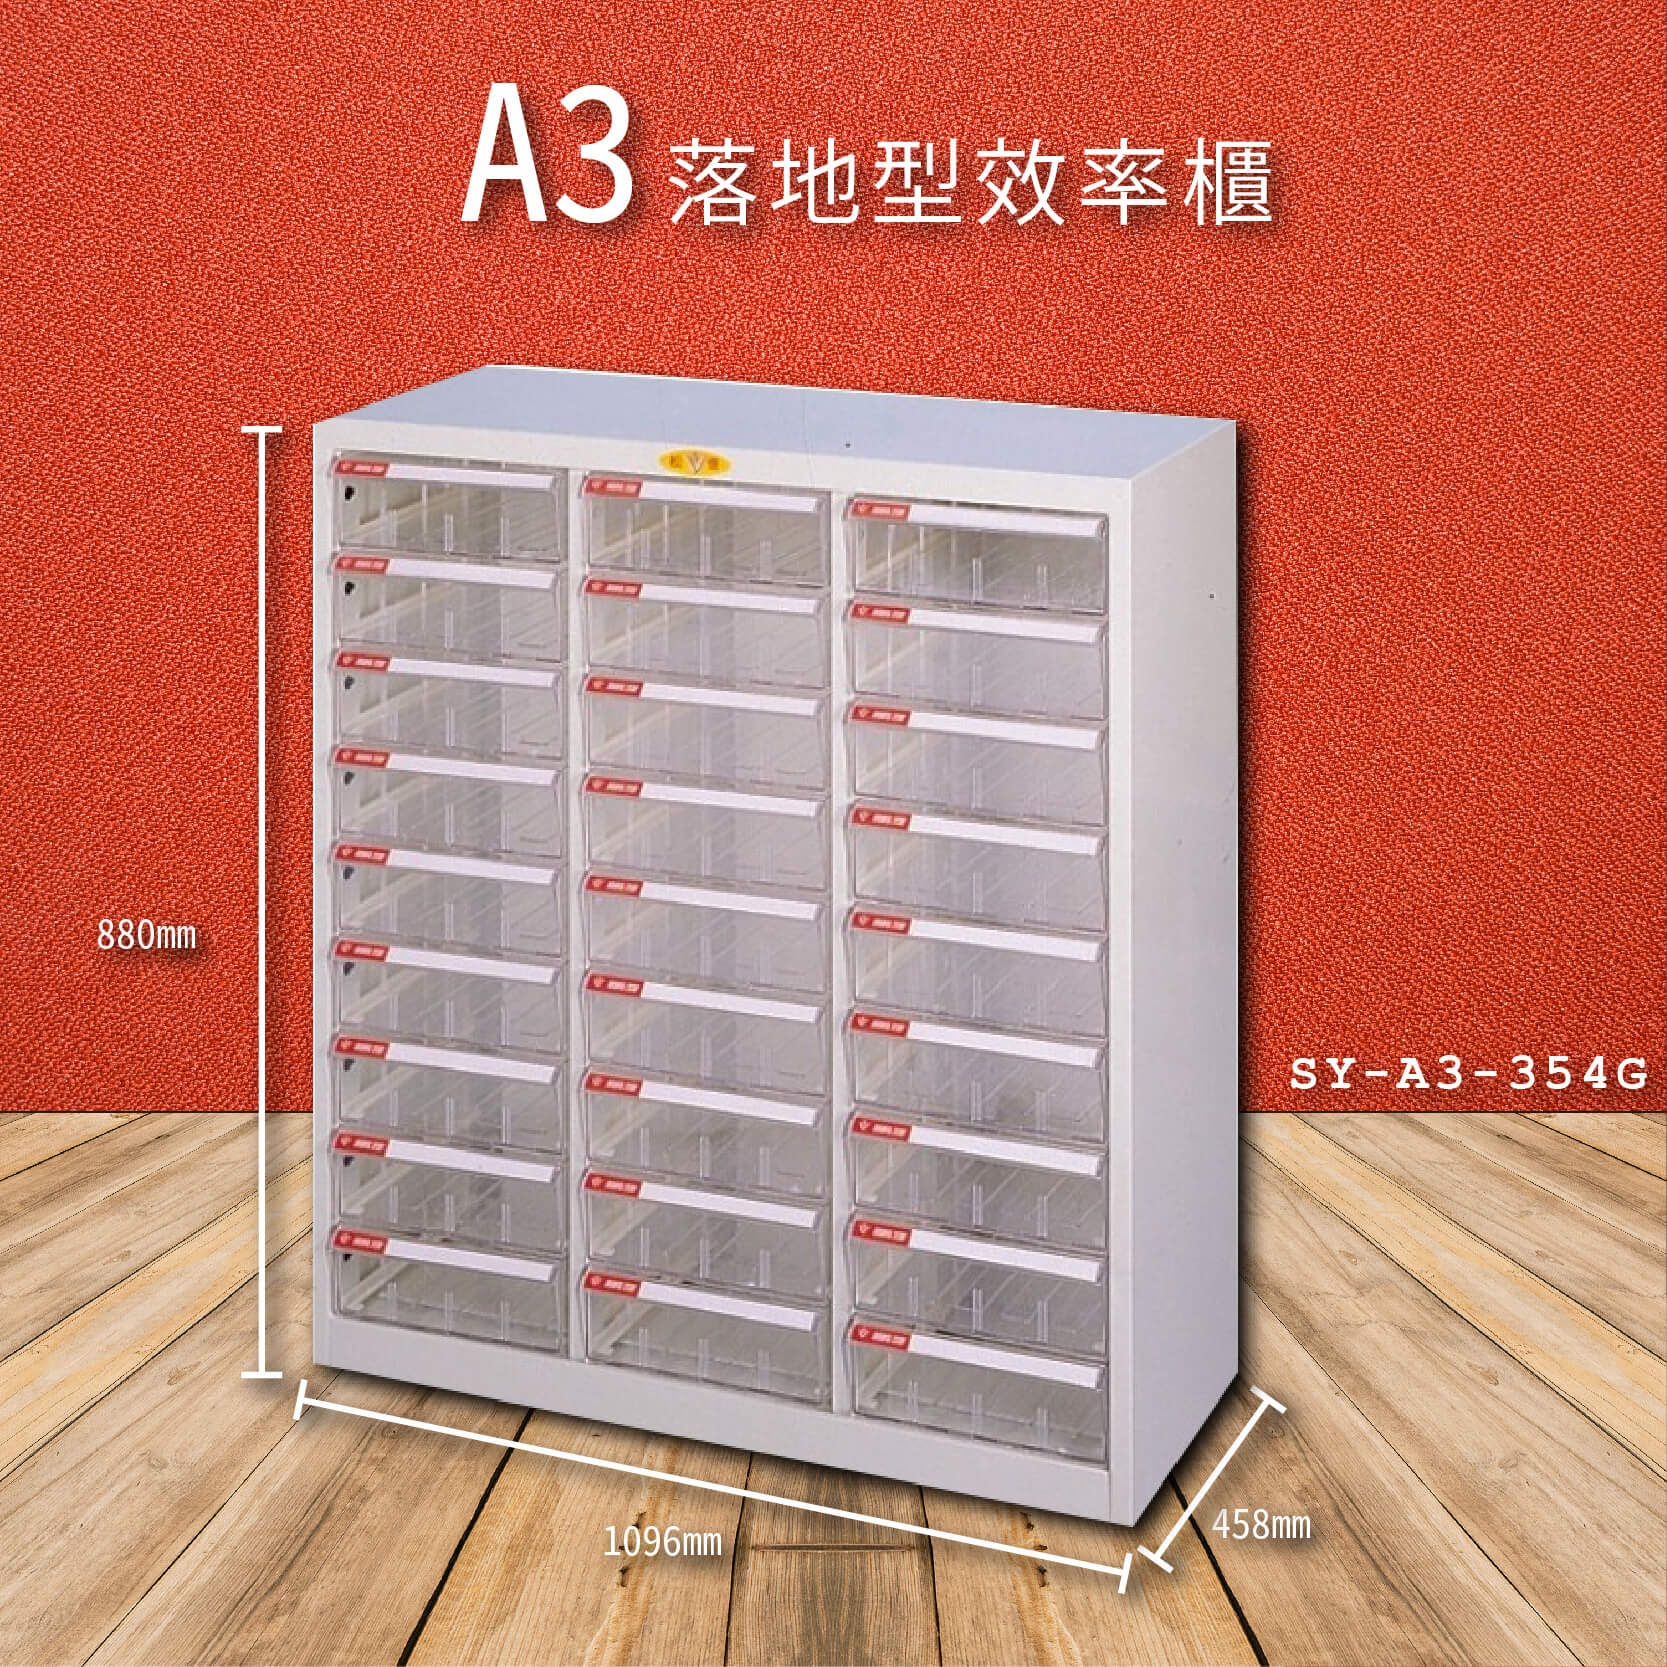 官方推薦【大富】SY-A3-354G A3落地型效率櫃 收納櫃 置物櫃 文件櫃 公文櫃 直立櫃 收納置物櫃 台灣製造